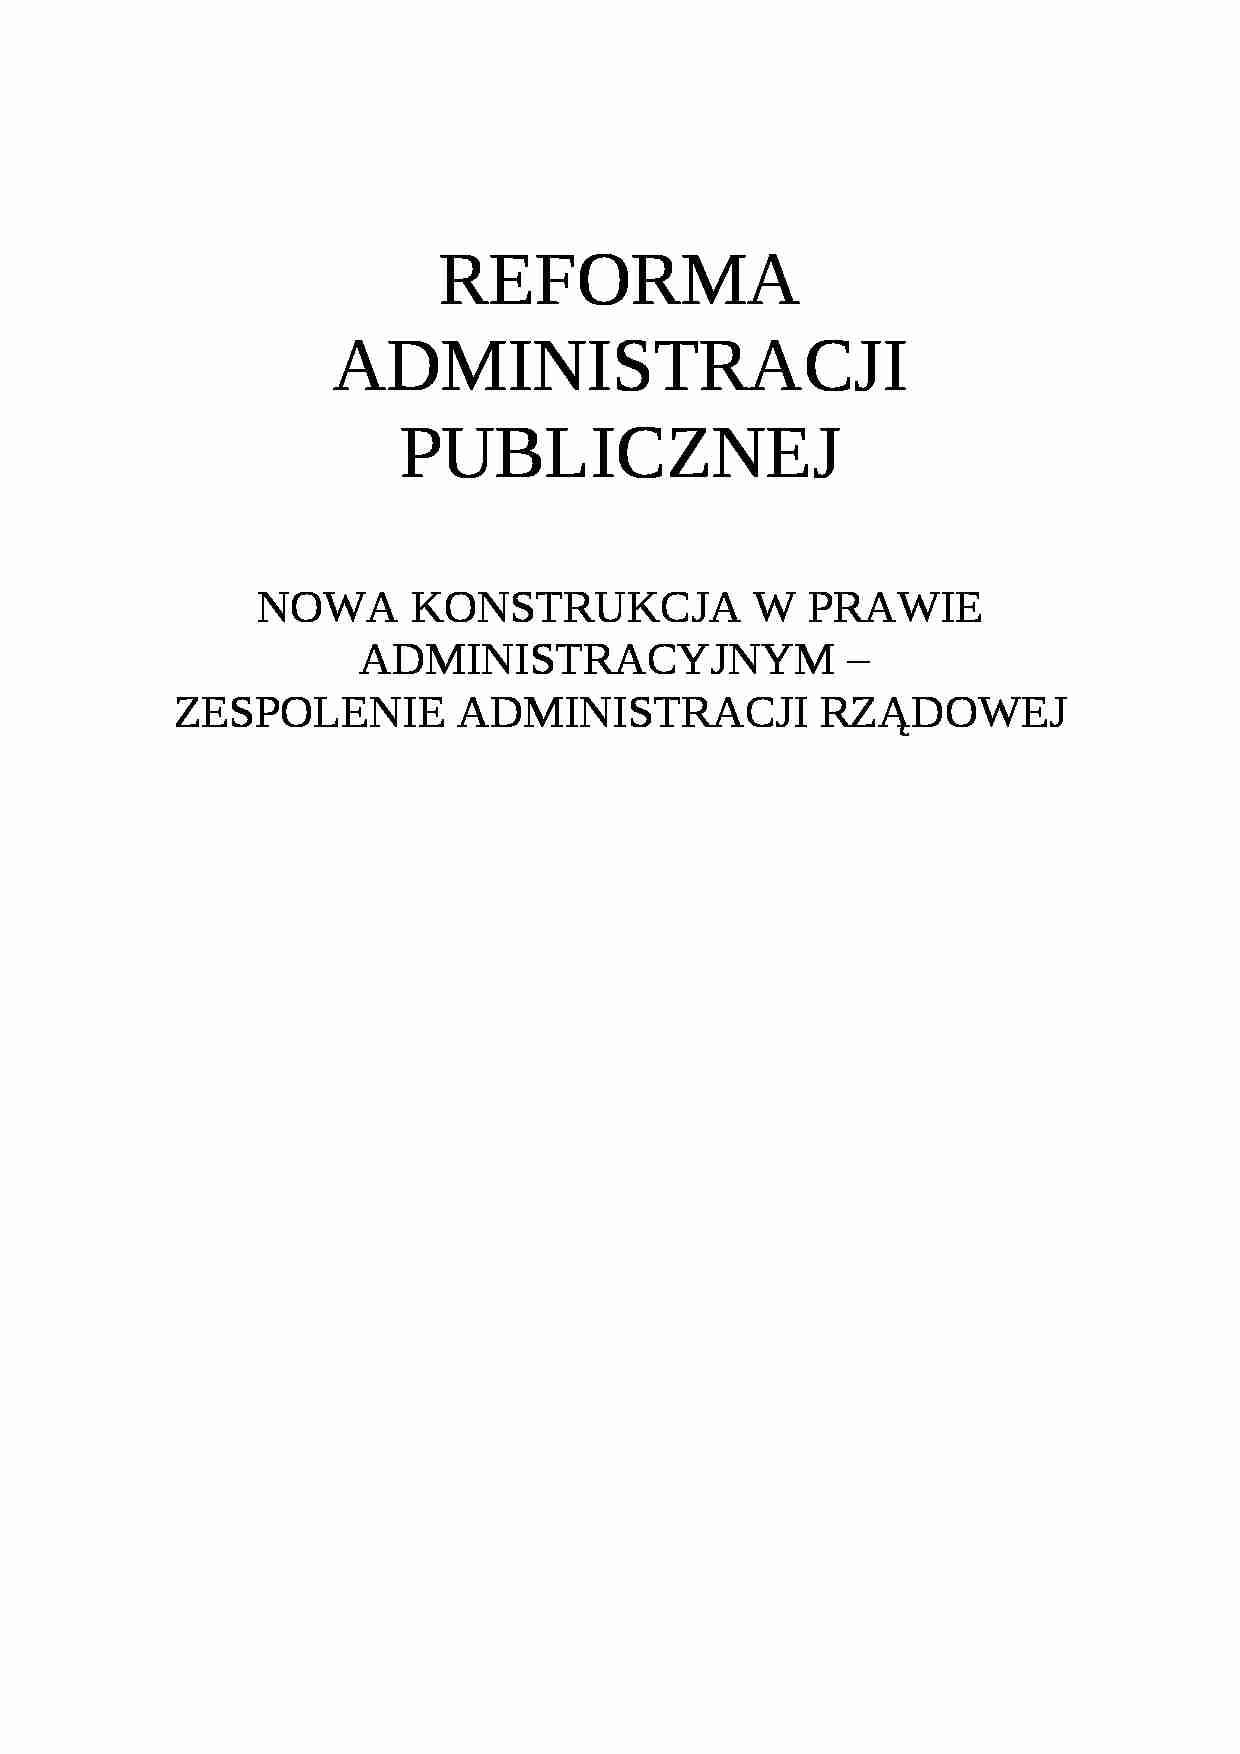 reforma Administracji Publicznej - Samorząd terytorialny - Gmina - strona 1